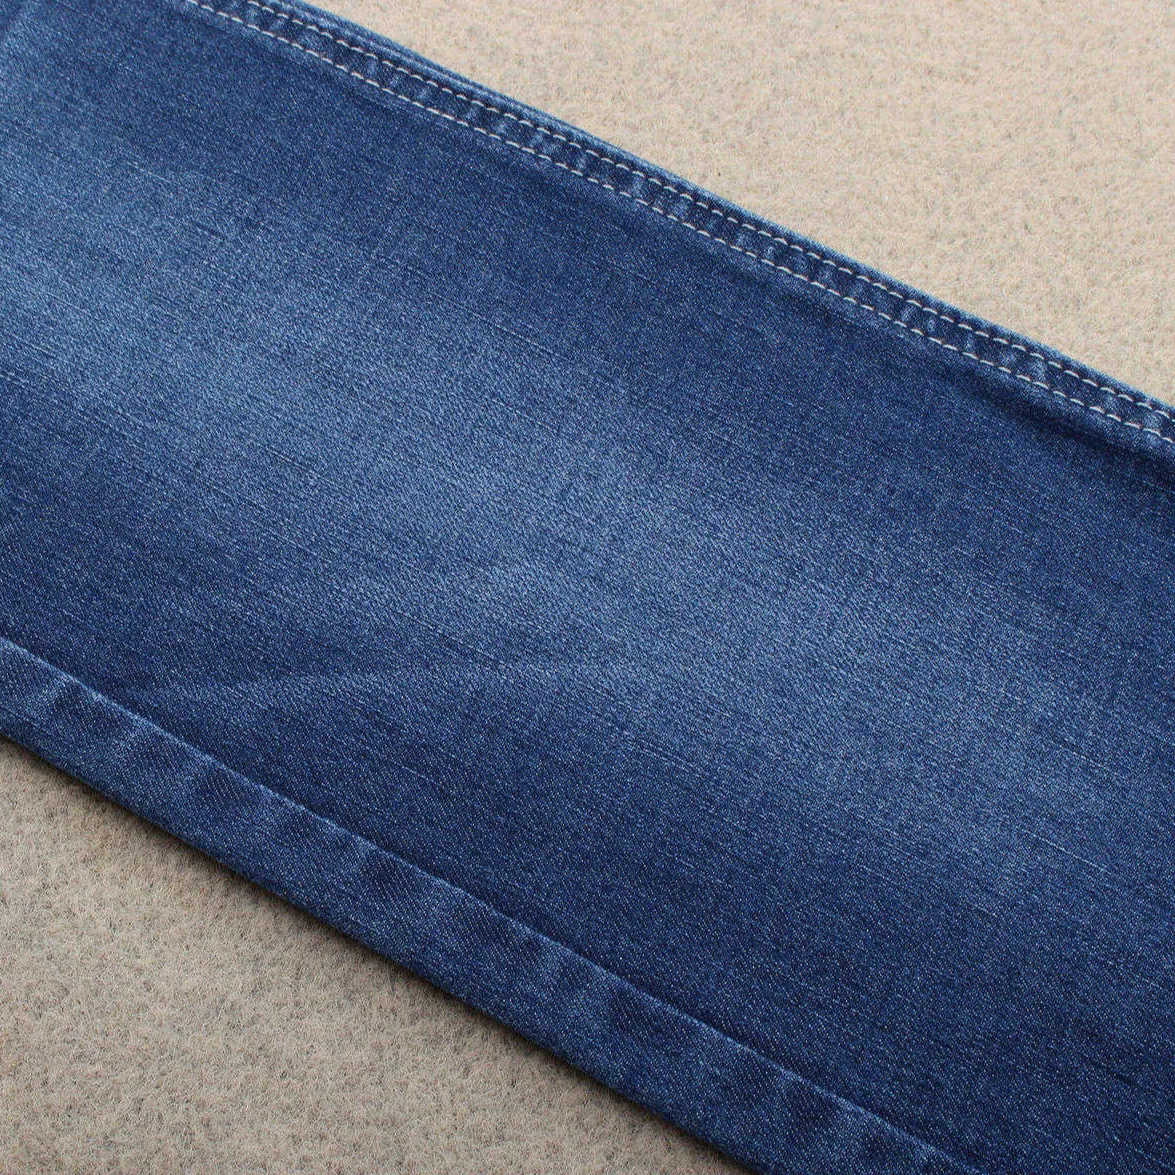 4 way stretch dualfx denim 9 oz cotton lycra denim jeans fabric